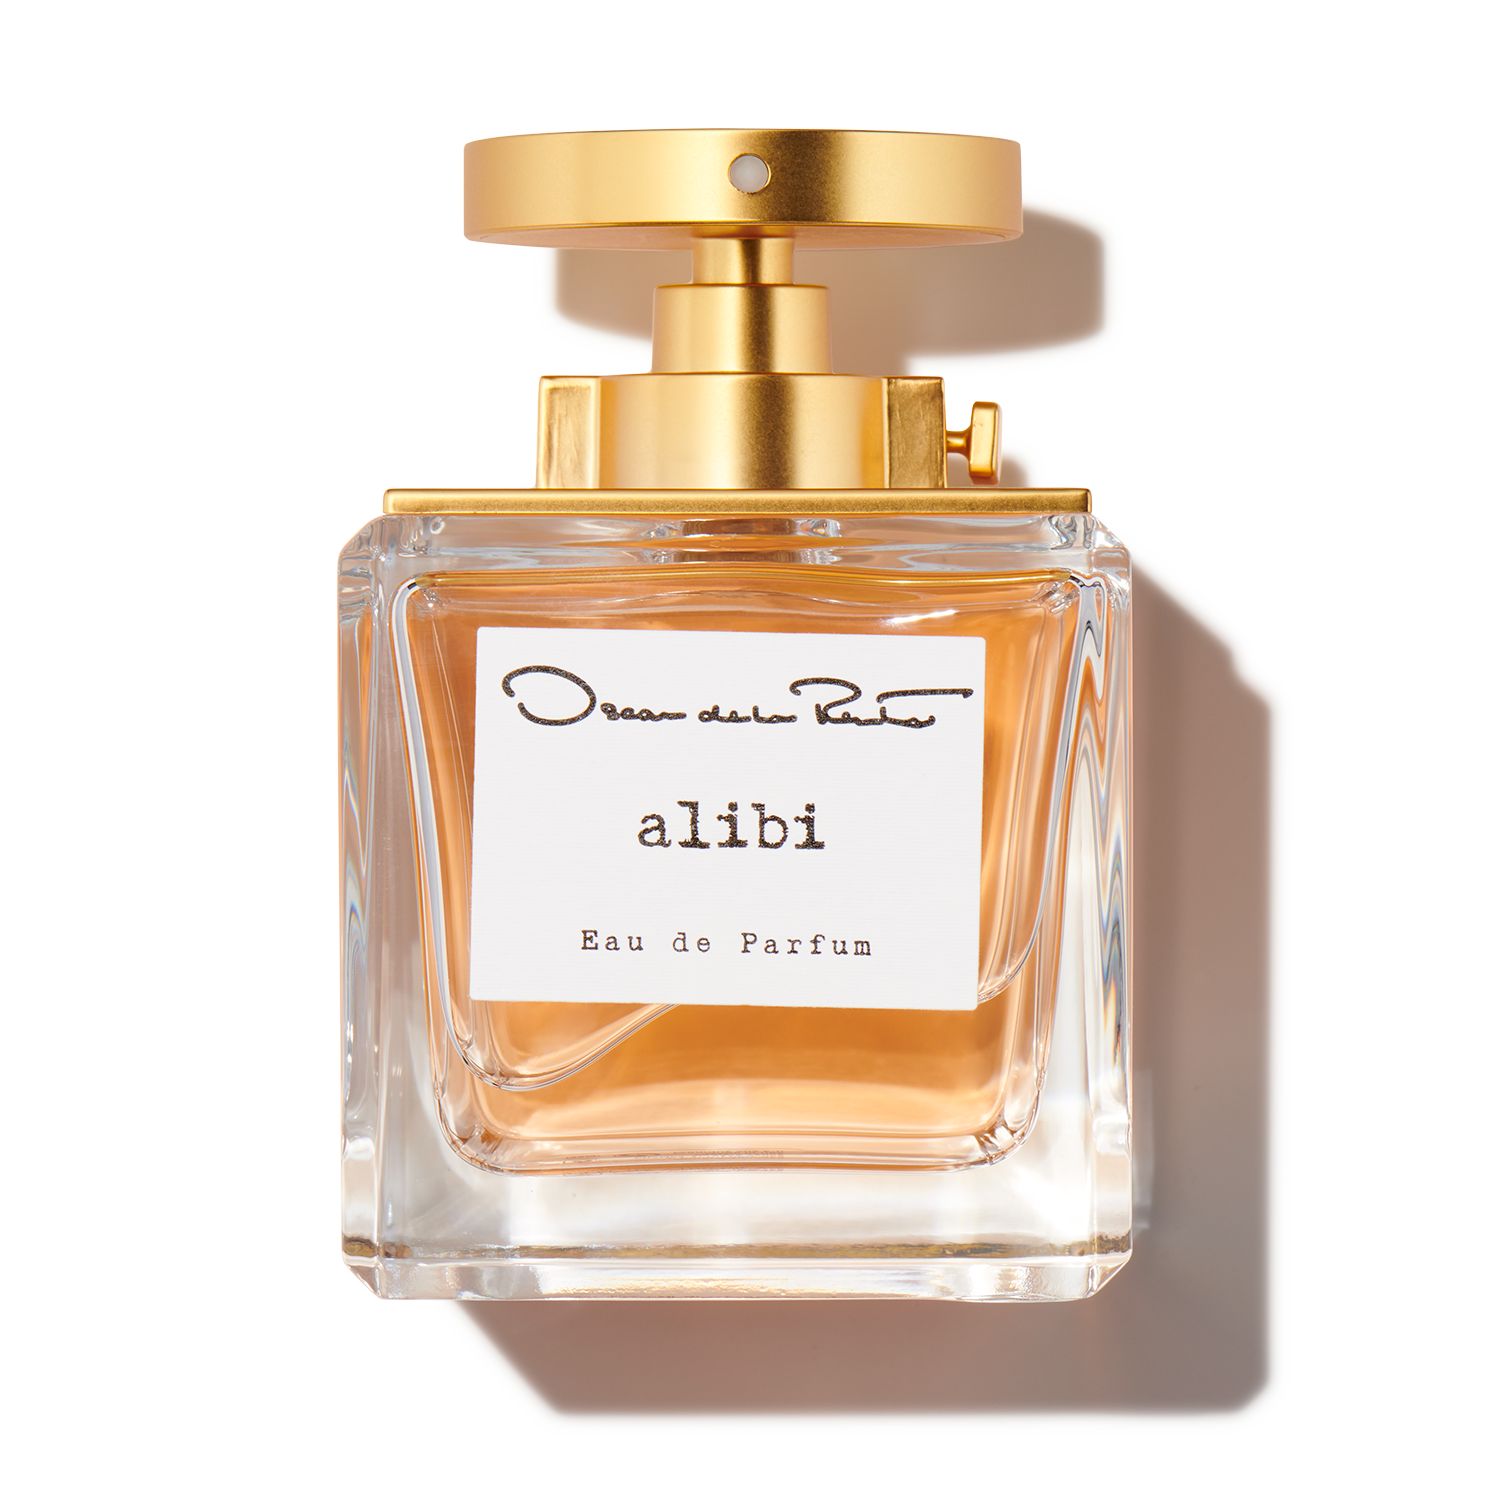 Oscar Perfumes